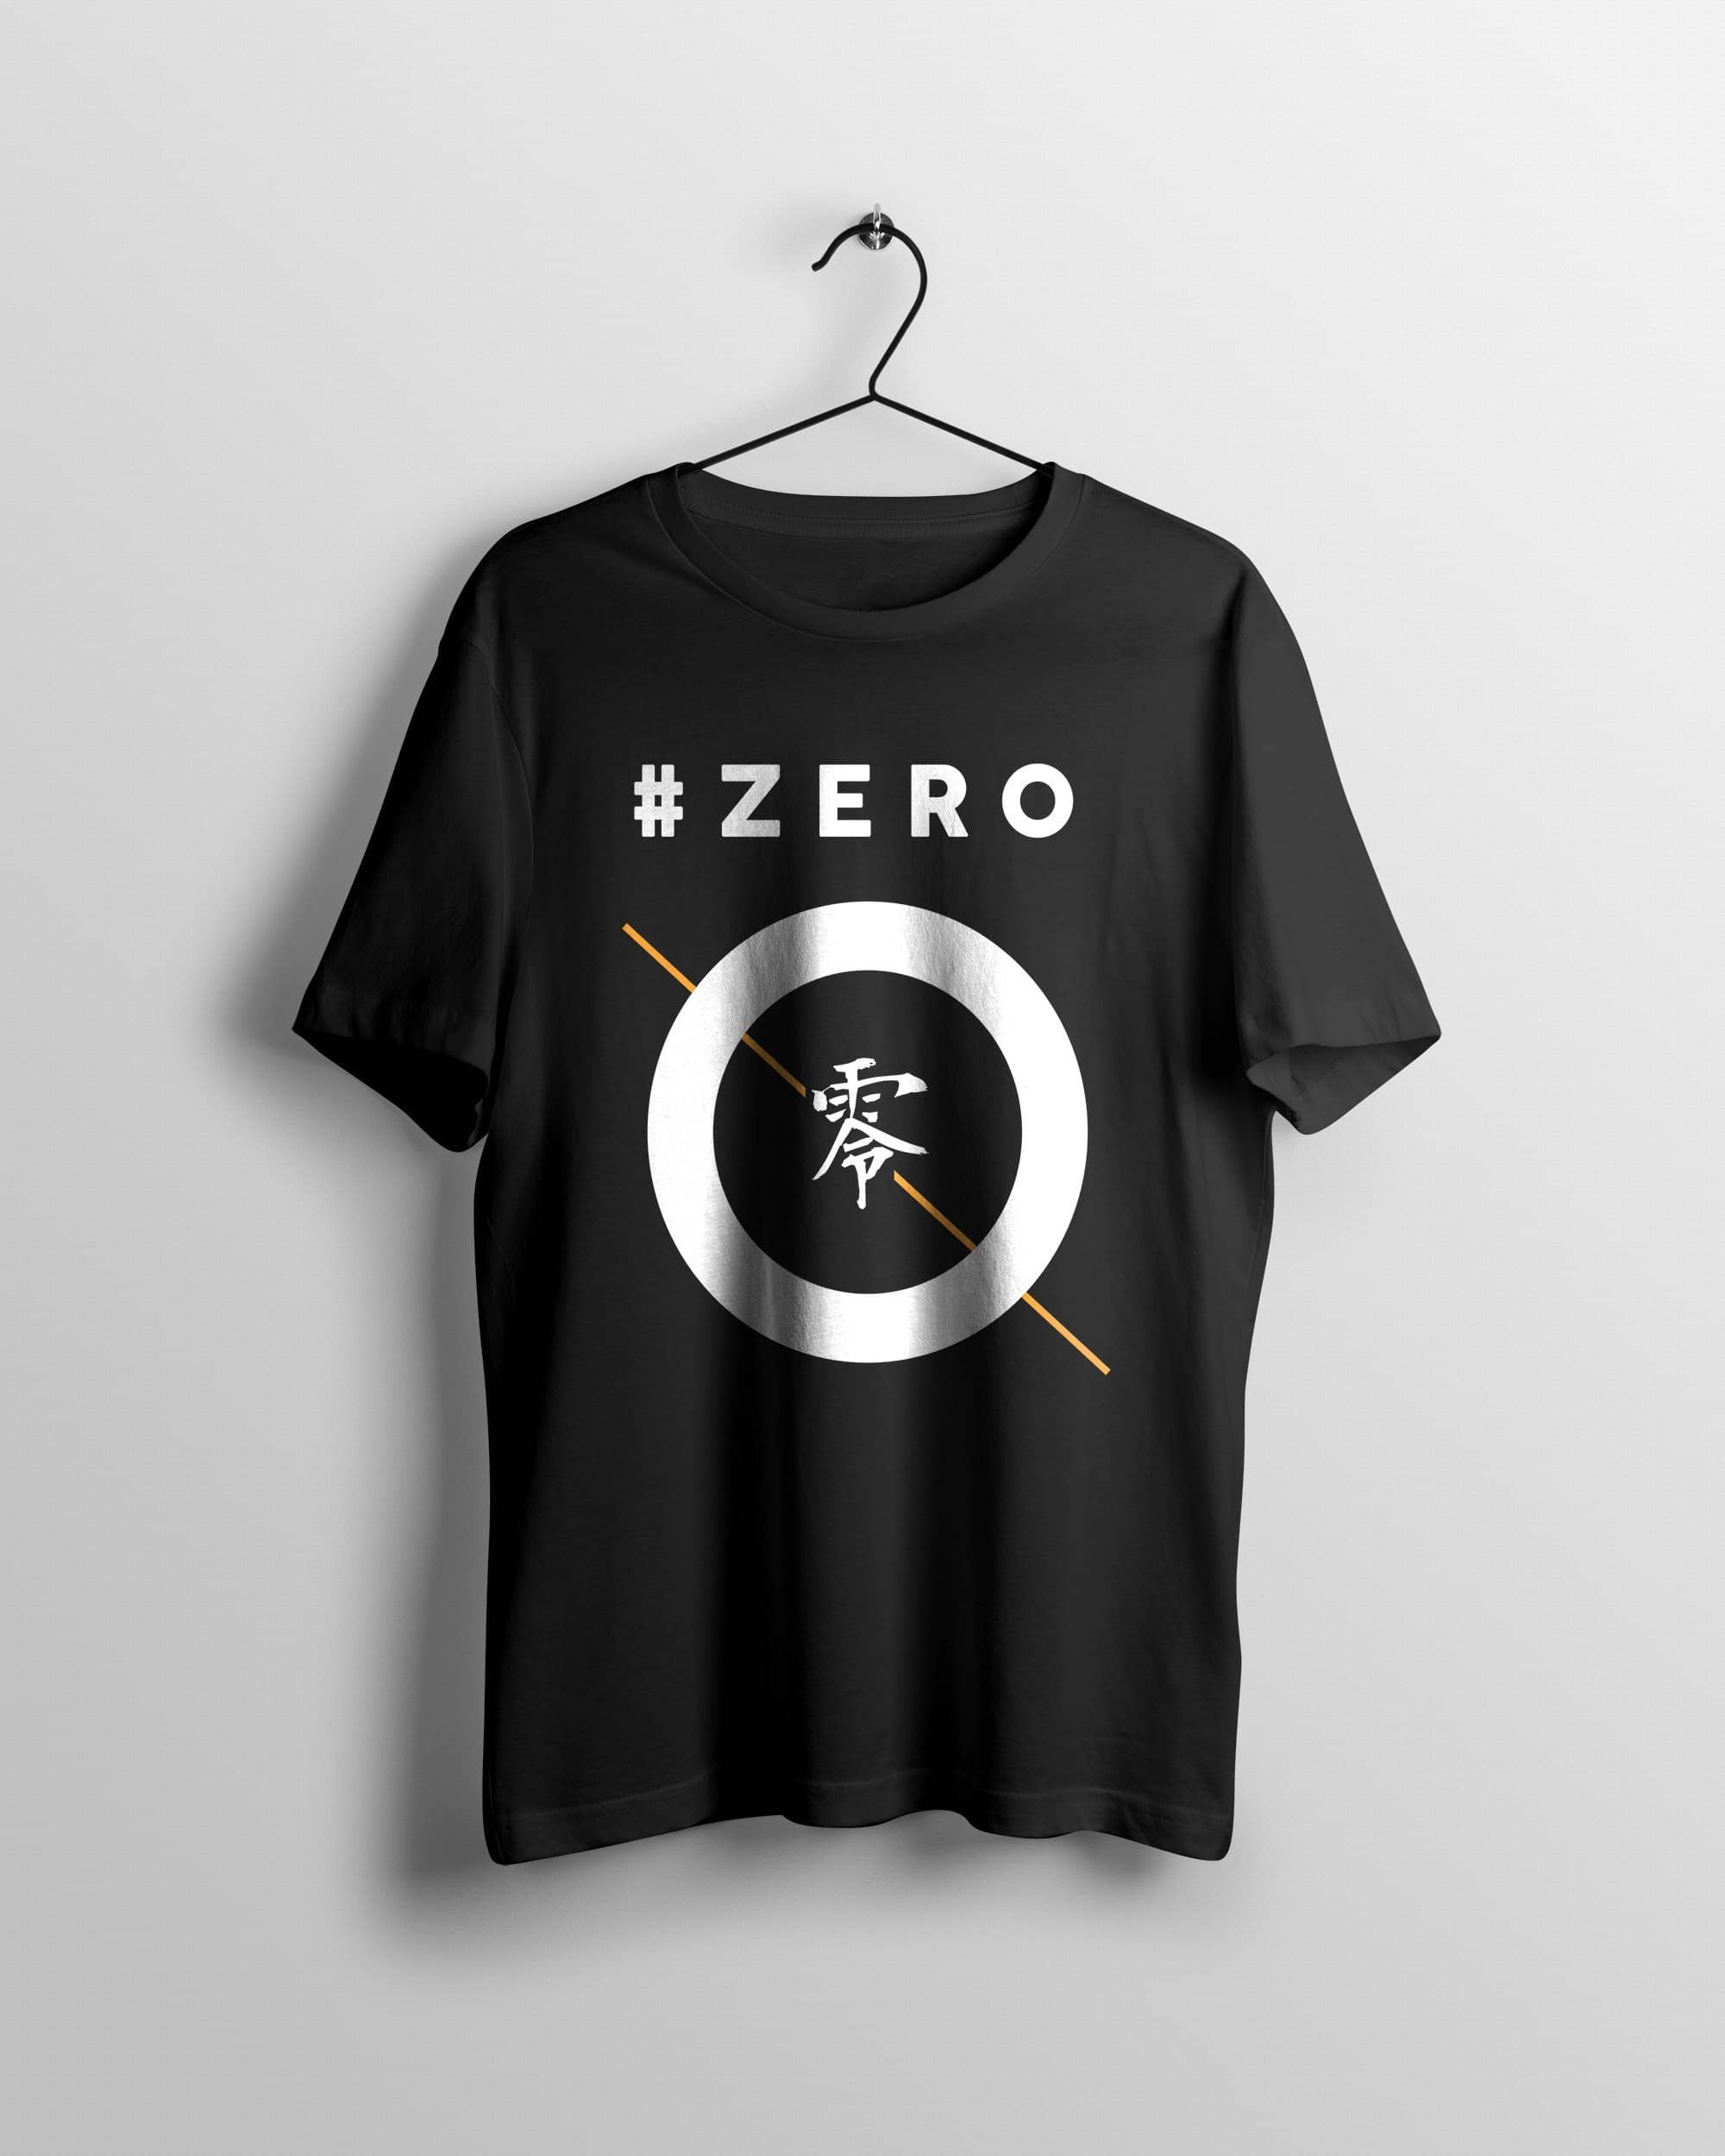 Hashtag Zero T-Shirt